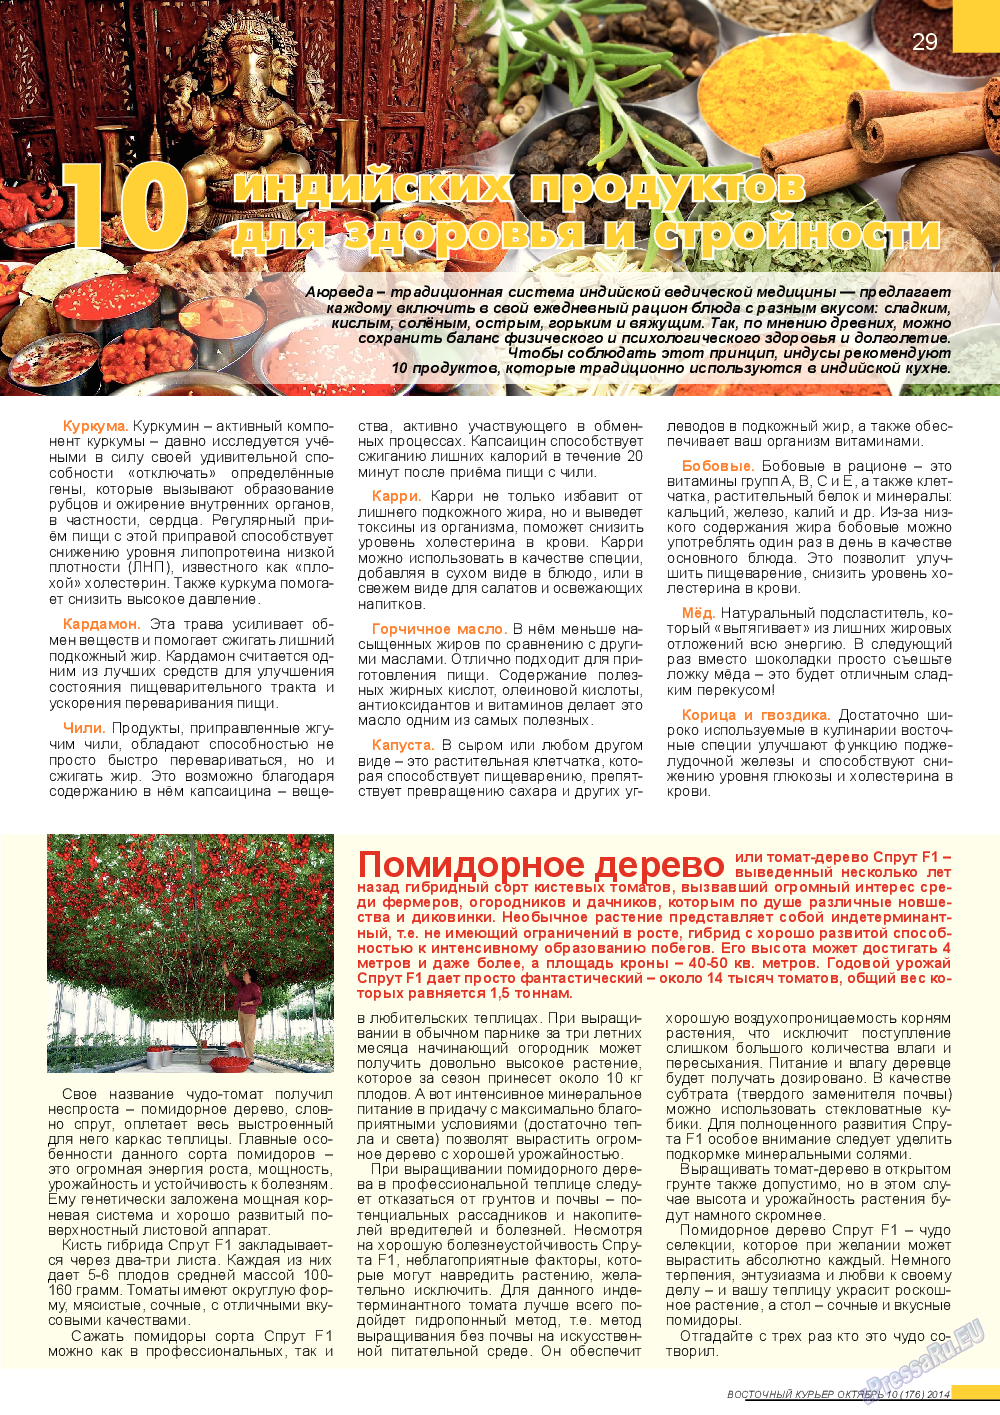 Восточный курьер (журнал). 2014 год, номер 10, стр. 29